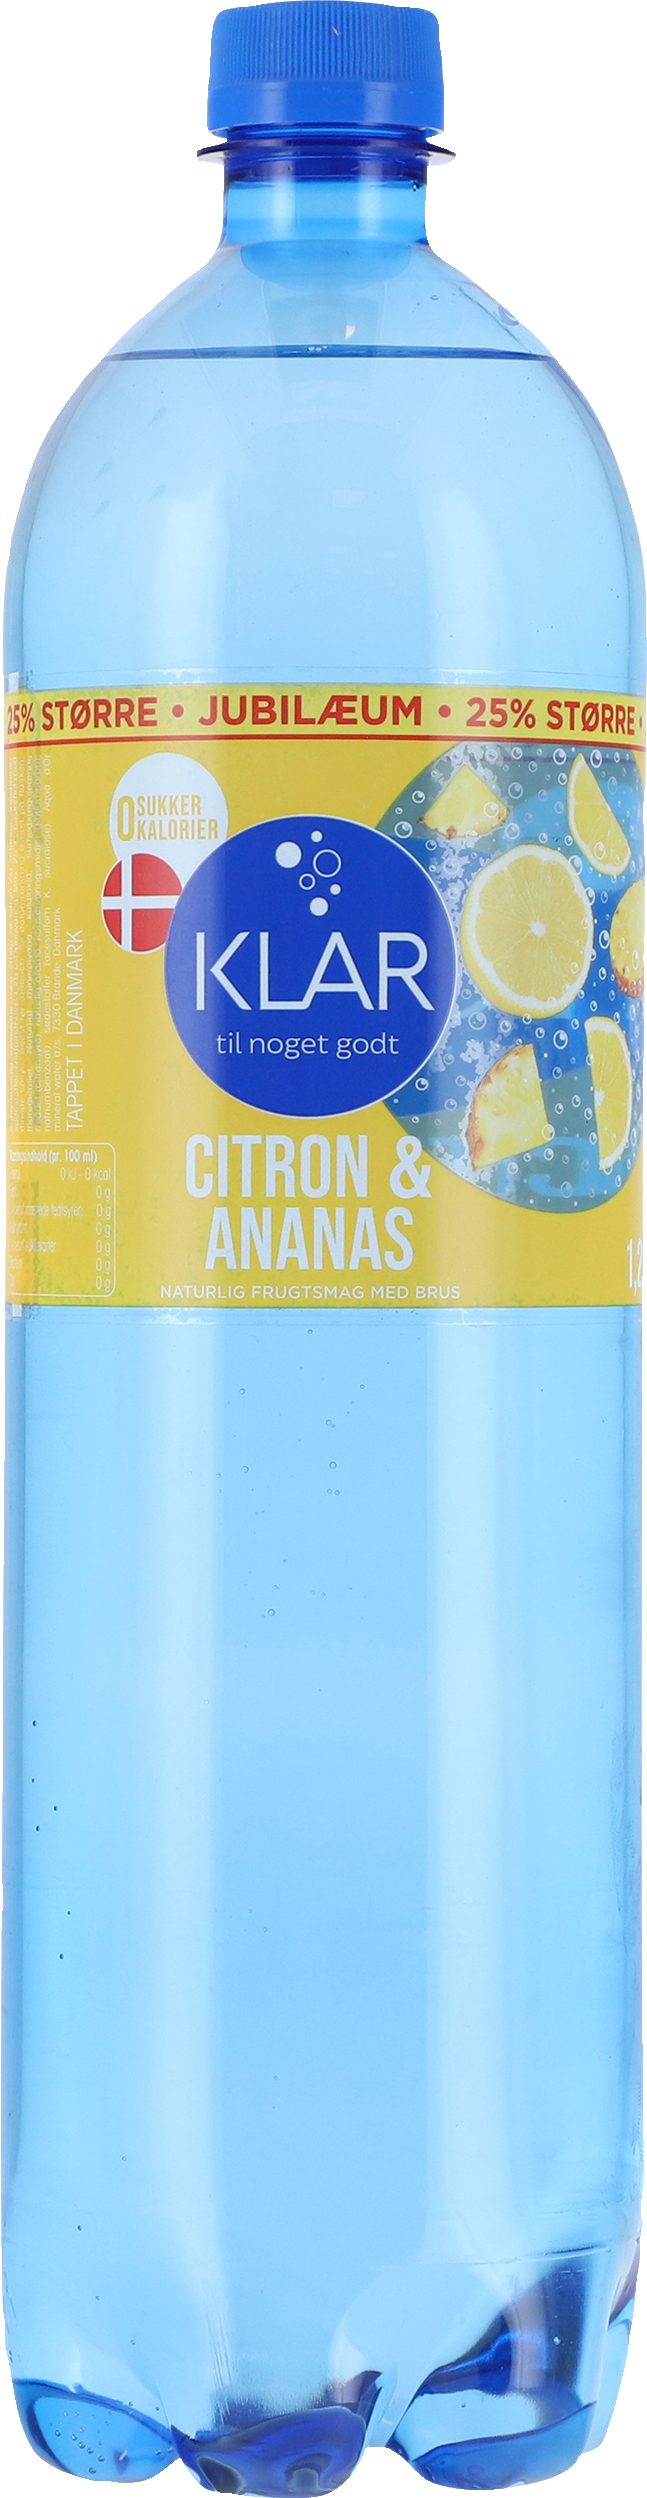 Grand Billy ged Søgemaskine optimering Aqua d'Or Klar Citron & Ananas 125 cl. - SODAVAND, SAFT & VAND - VIN MED  MERE .DK